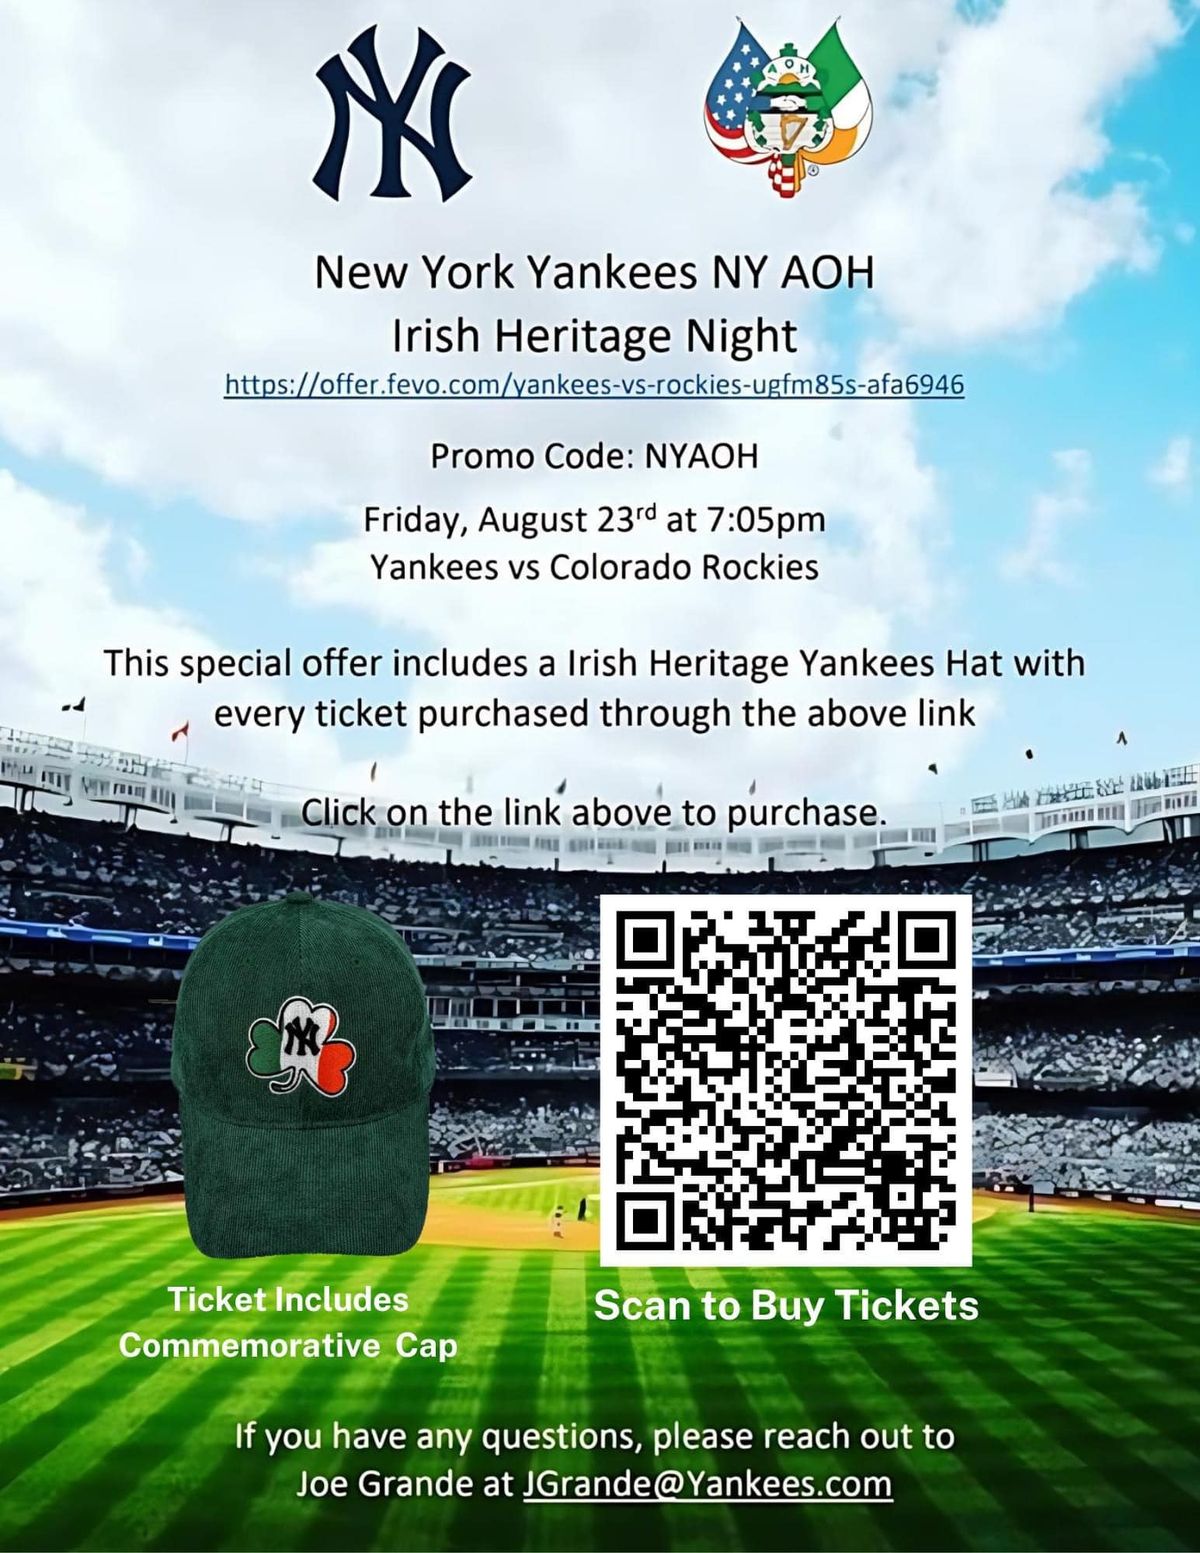 NY Yankees & NY AOH Irish Heritage Night